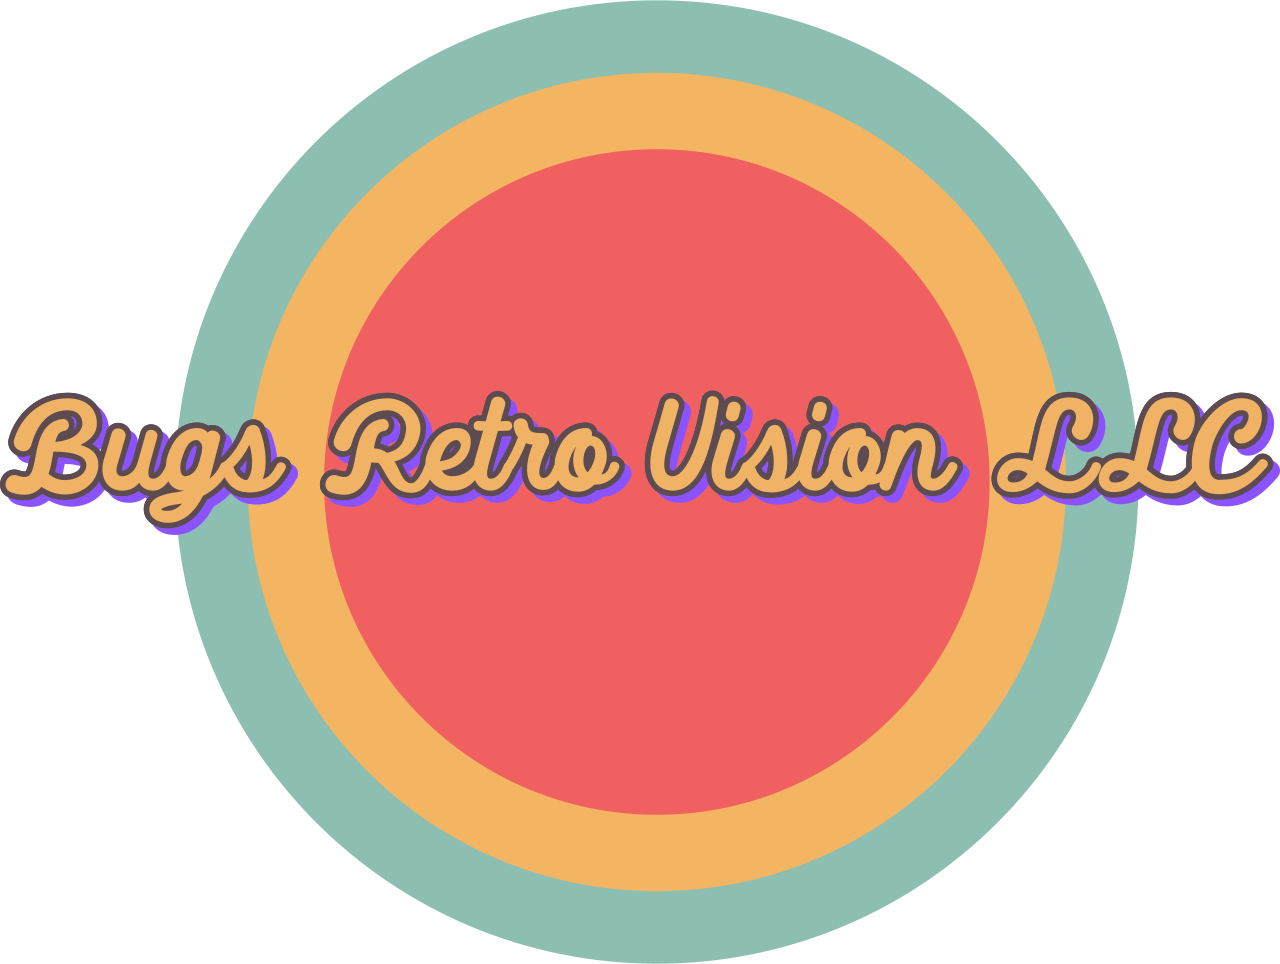 Bugs Retro Vision LLC's web page